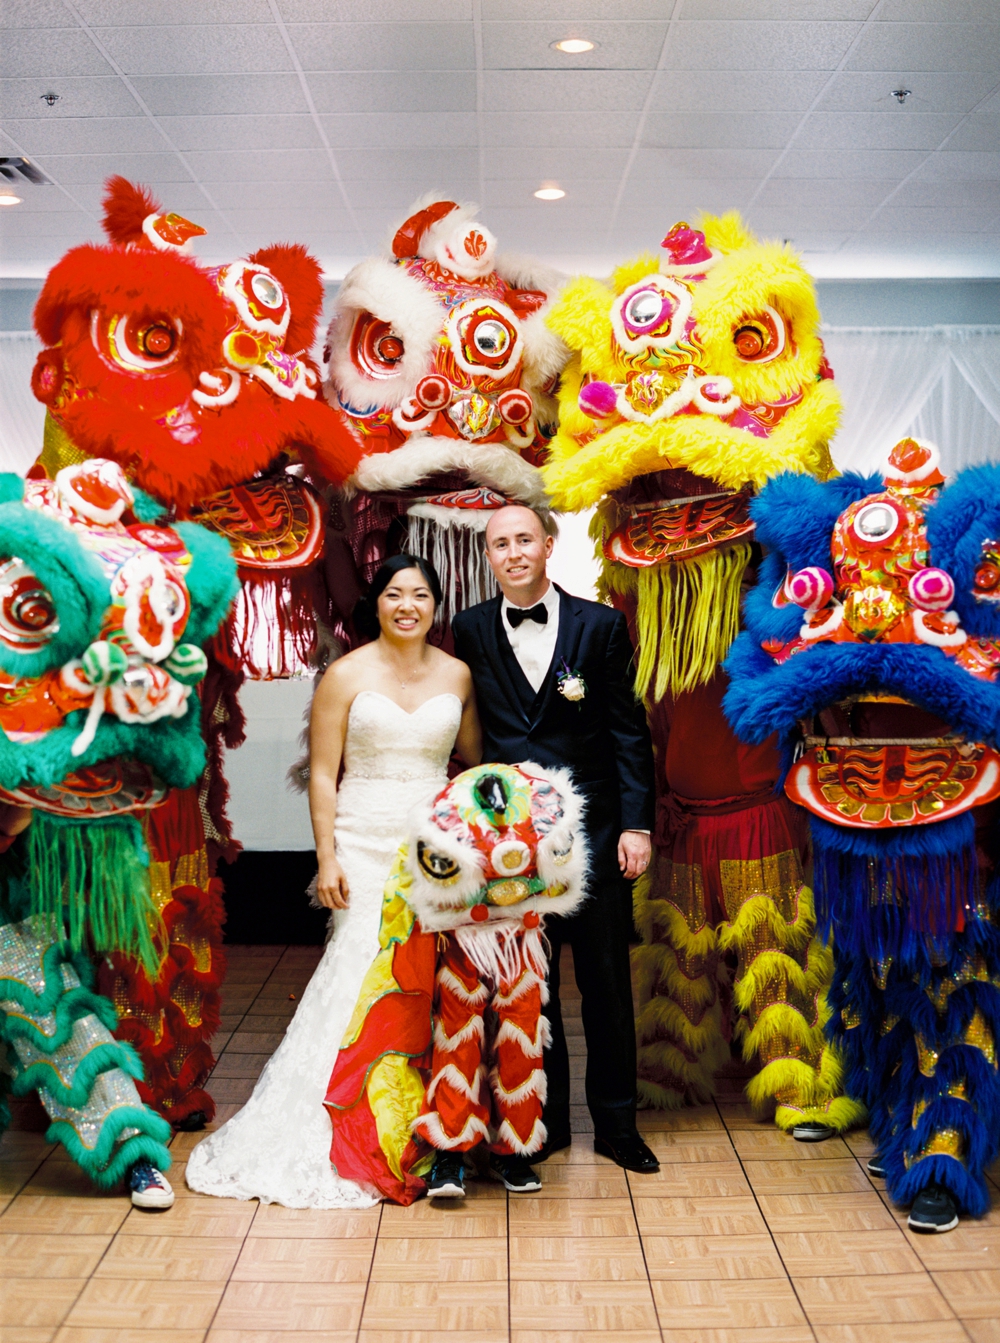 Calgary wedding photographers | chinese wedding | downtown calgary wedding photography | Civic on Third calgary wedding | mariott downtown calgary rooftop wedding